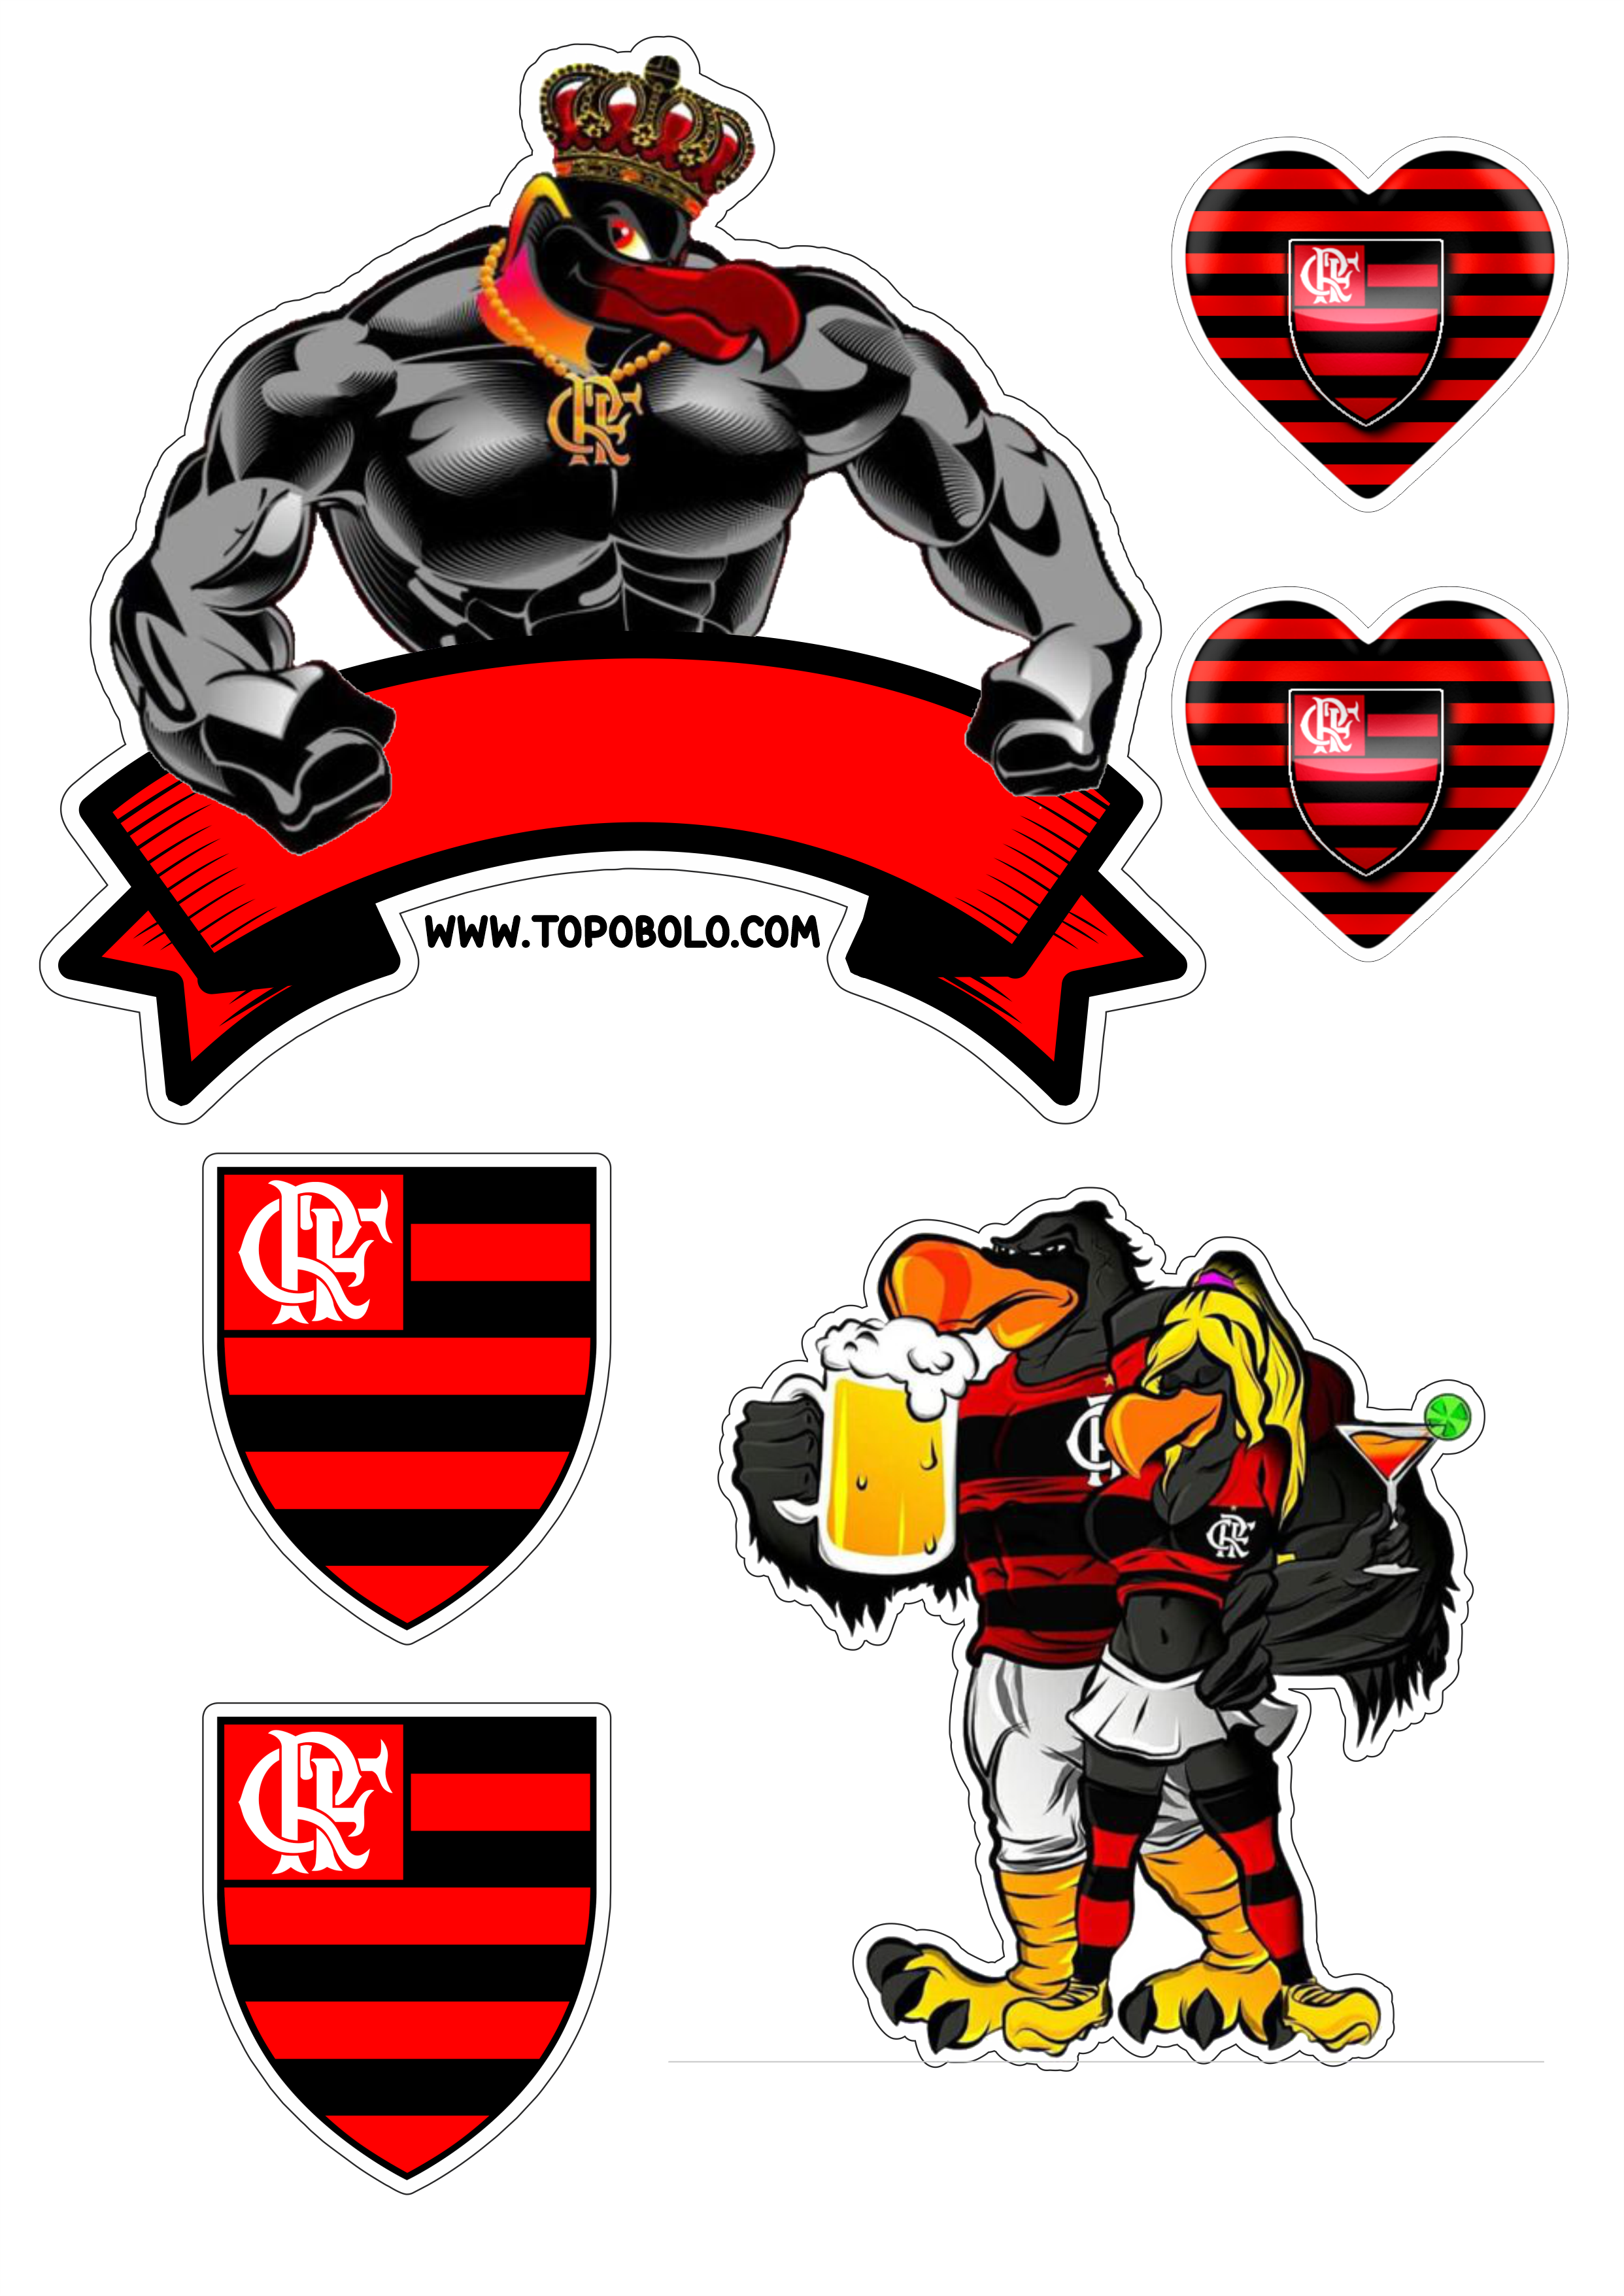 Flamengo futebol clube topo de bolo decoração de aniversário urubu mascote campeonato carioca png